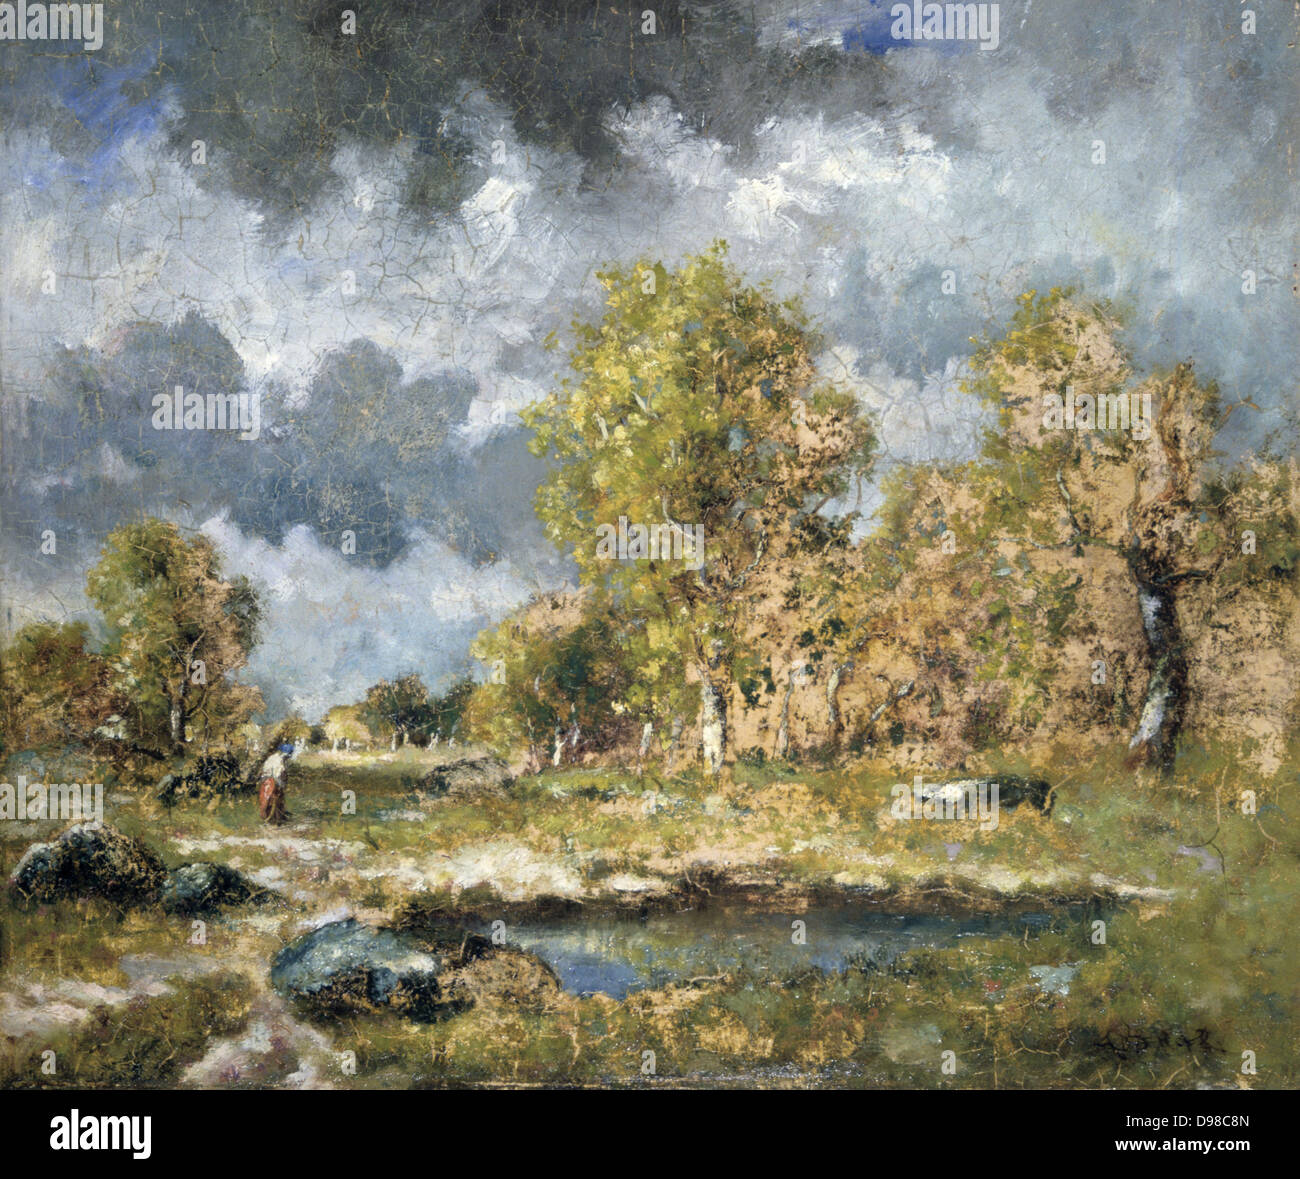 La piscina': olio su pannello. Nacisse Diaz de la Peña (1801-1876), pittore francese. Piscina in un campo roccioso con alberi secolari e da una parete in rovina. Foto Stock